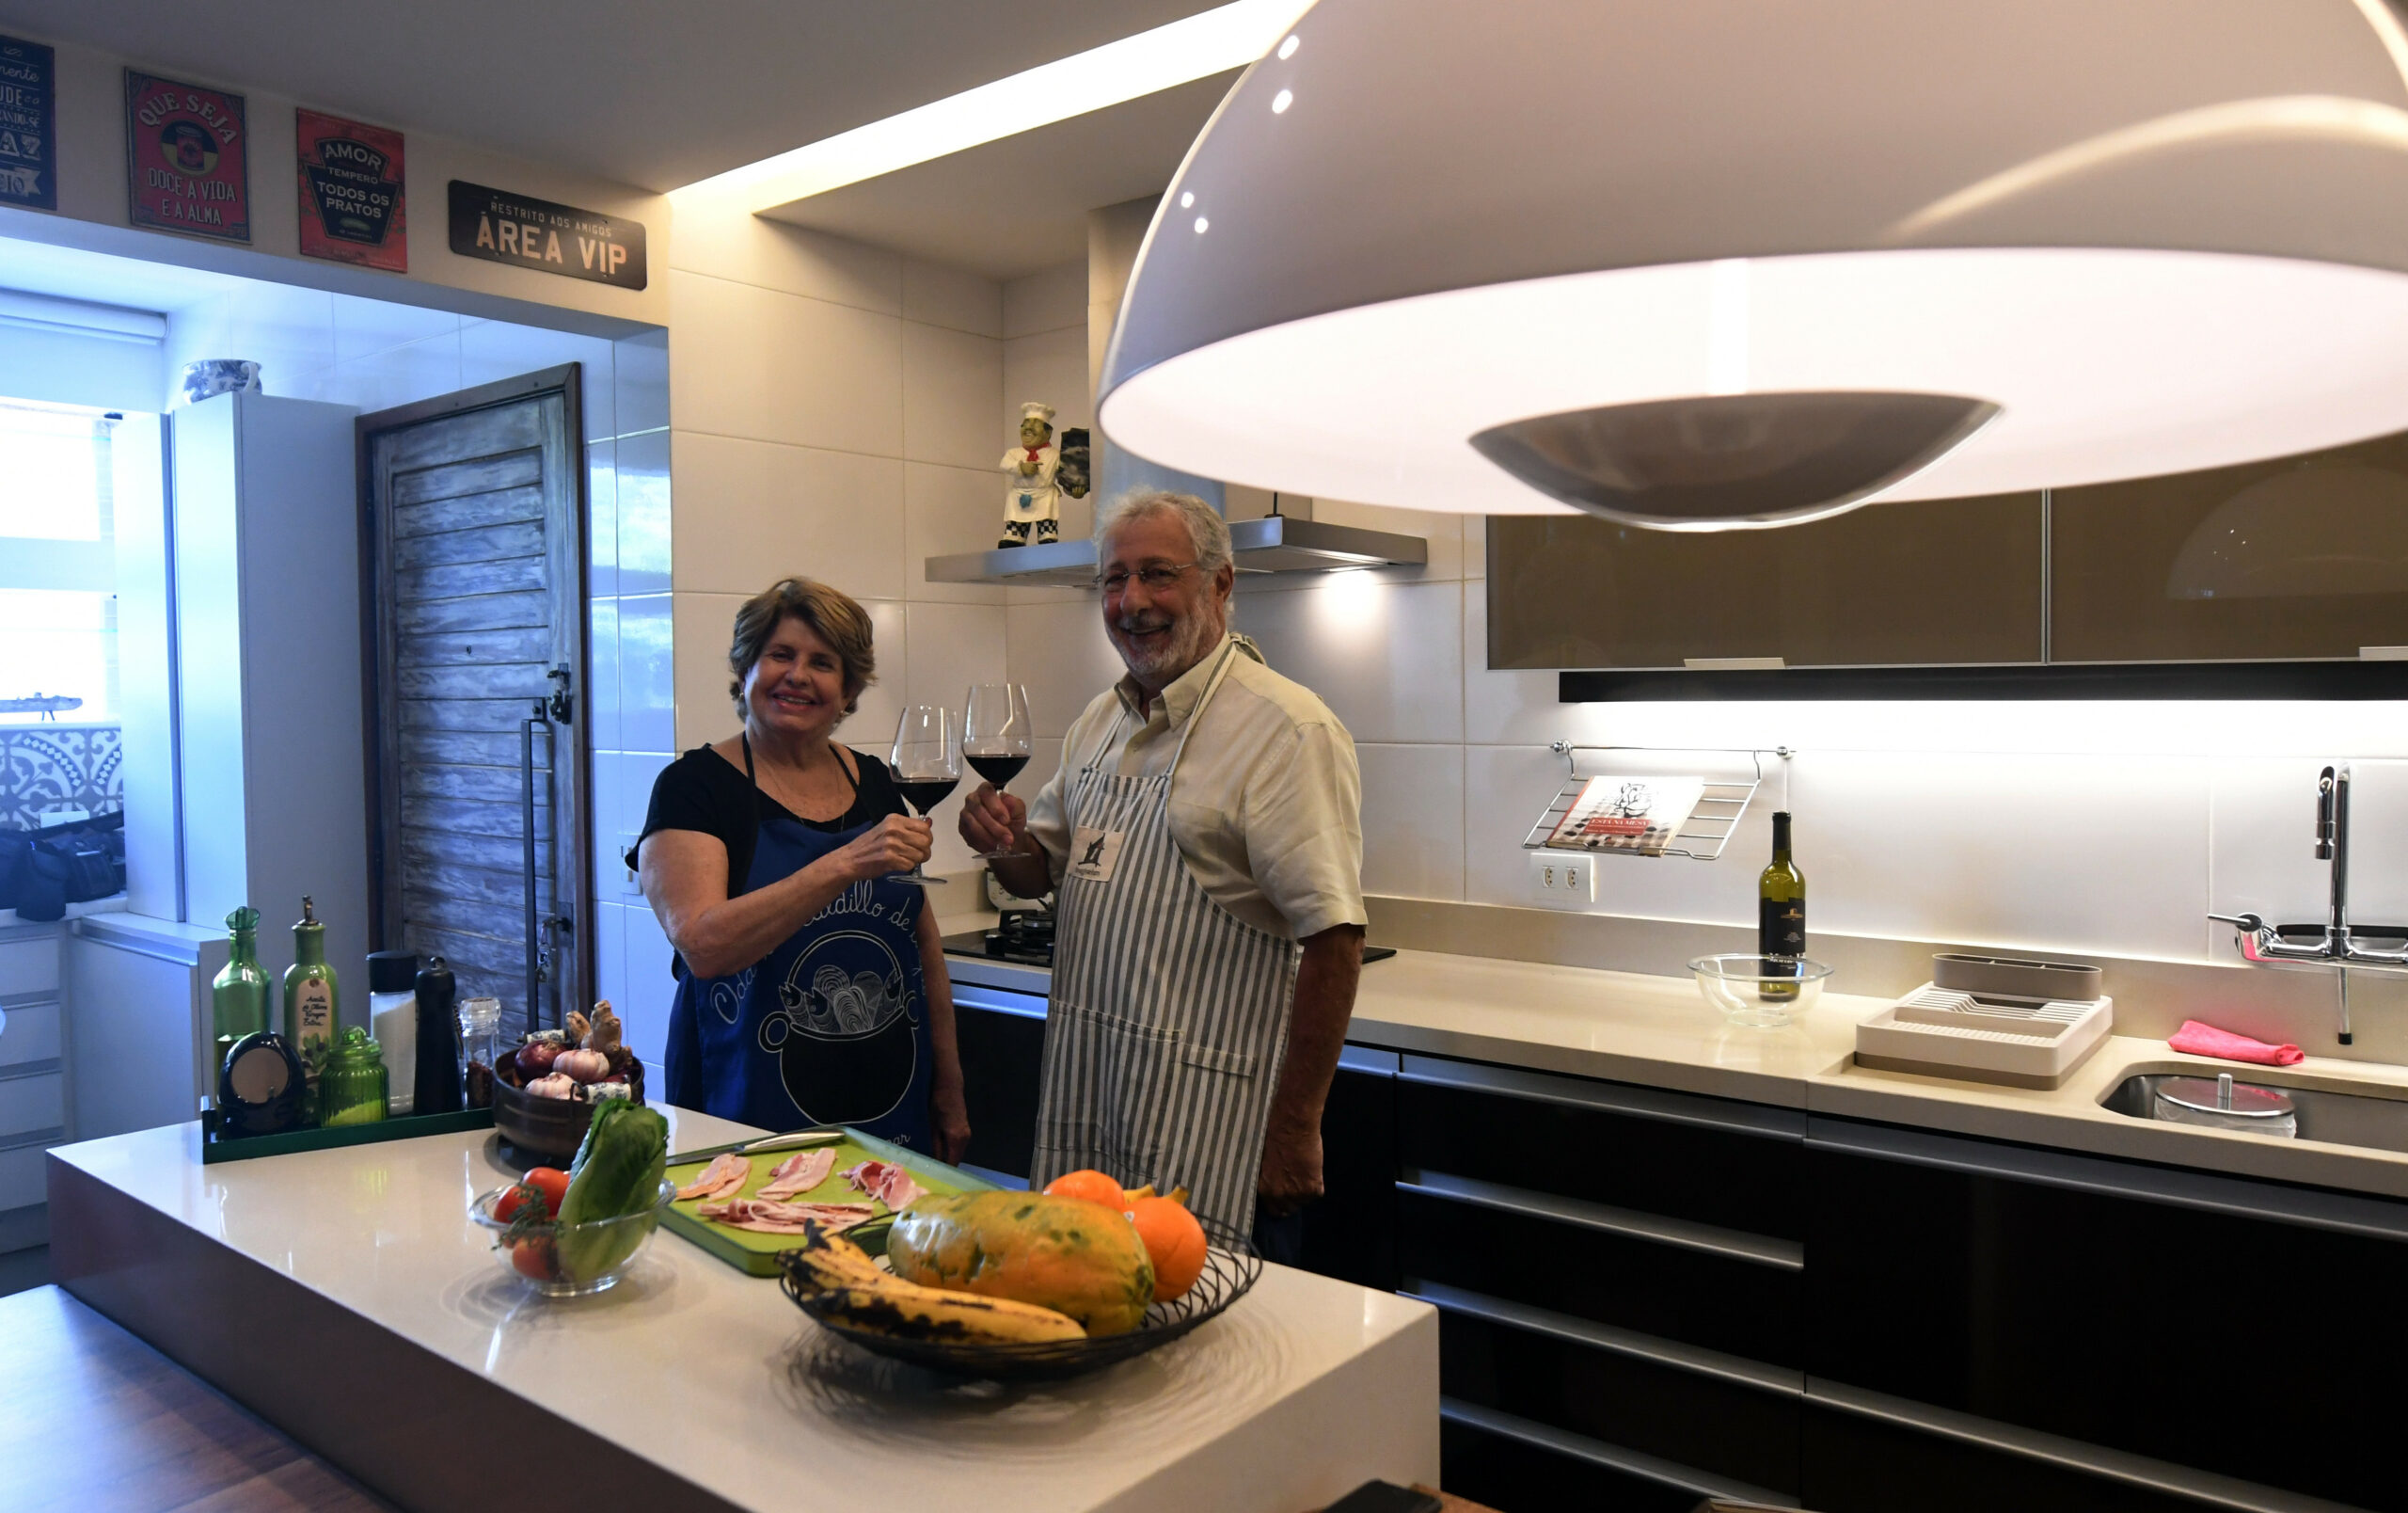 Moradores da mesma quadra de Brasília unidos pelo talento na cozinha